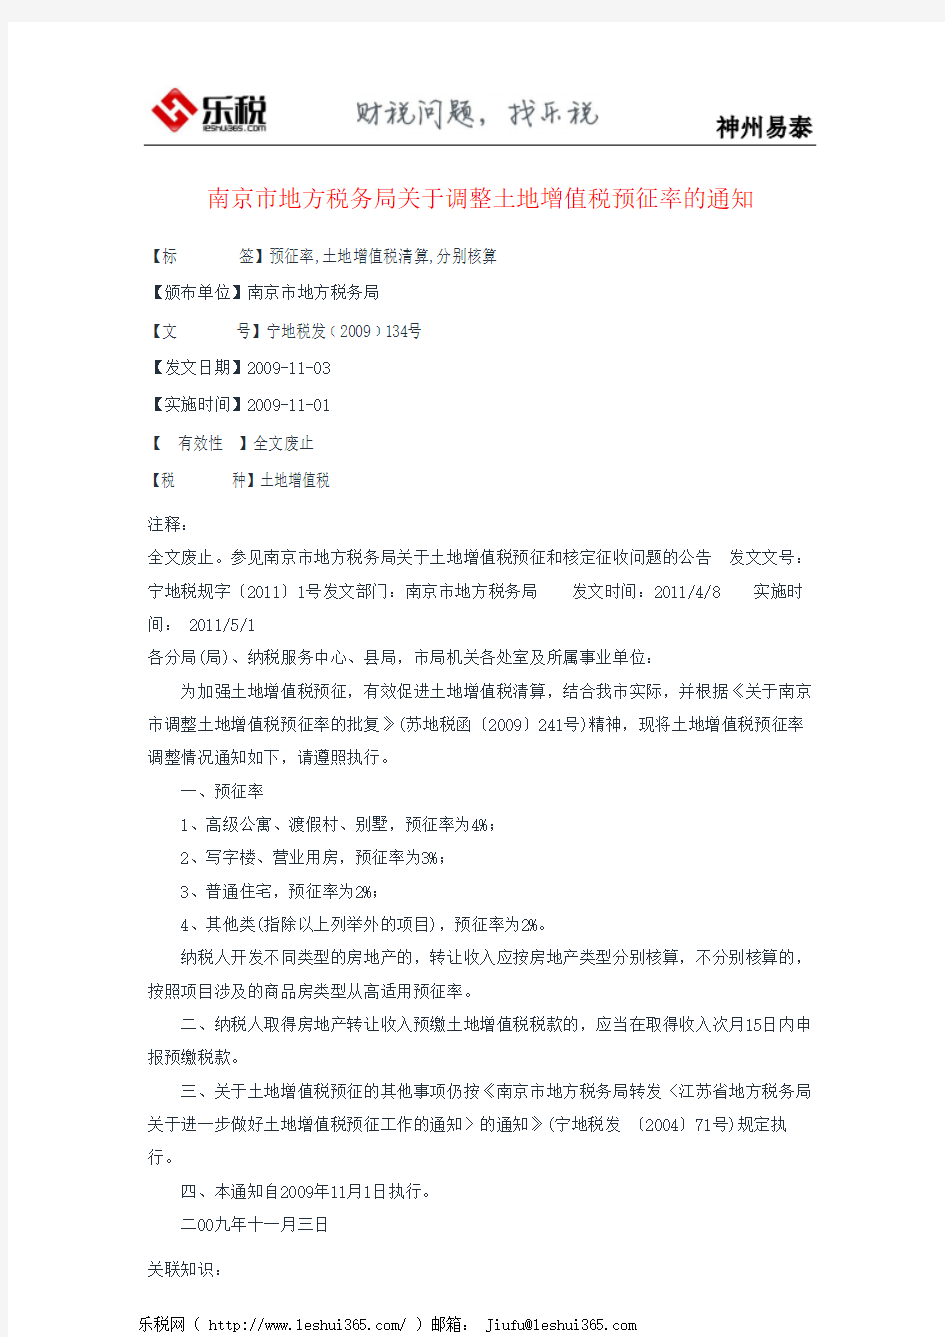 南京市地方税务局关于调整土地增值税预征率的通知